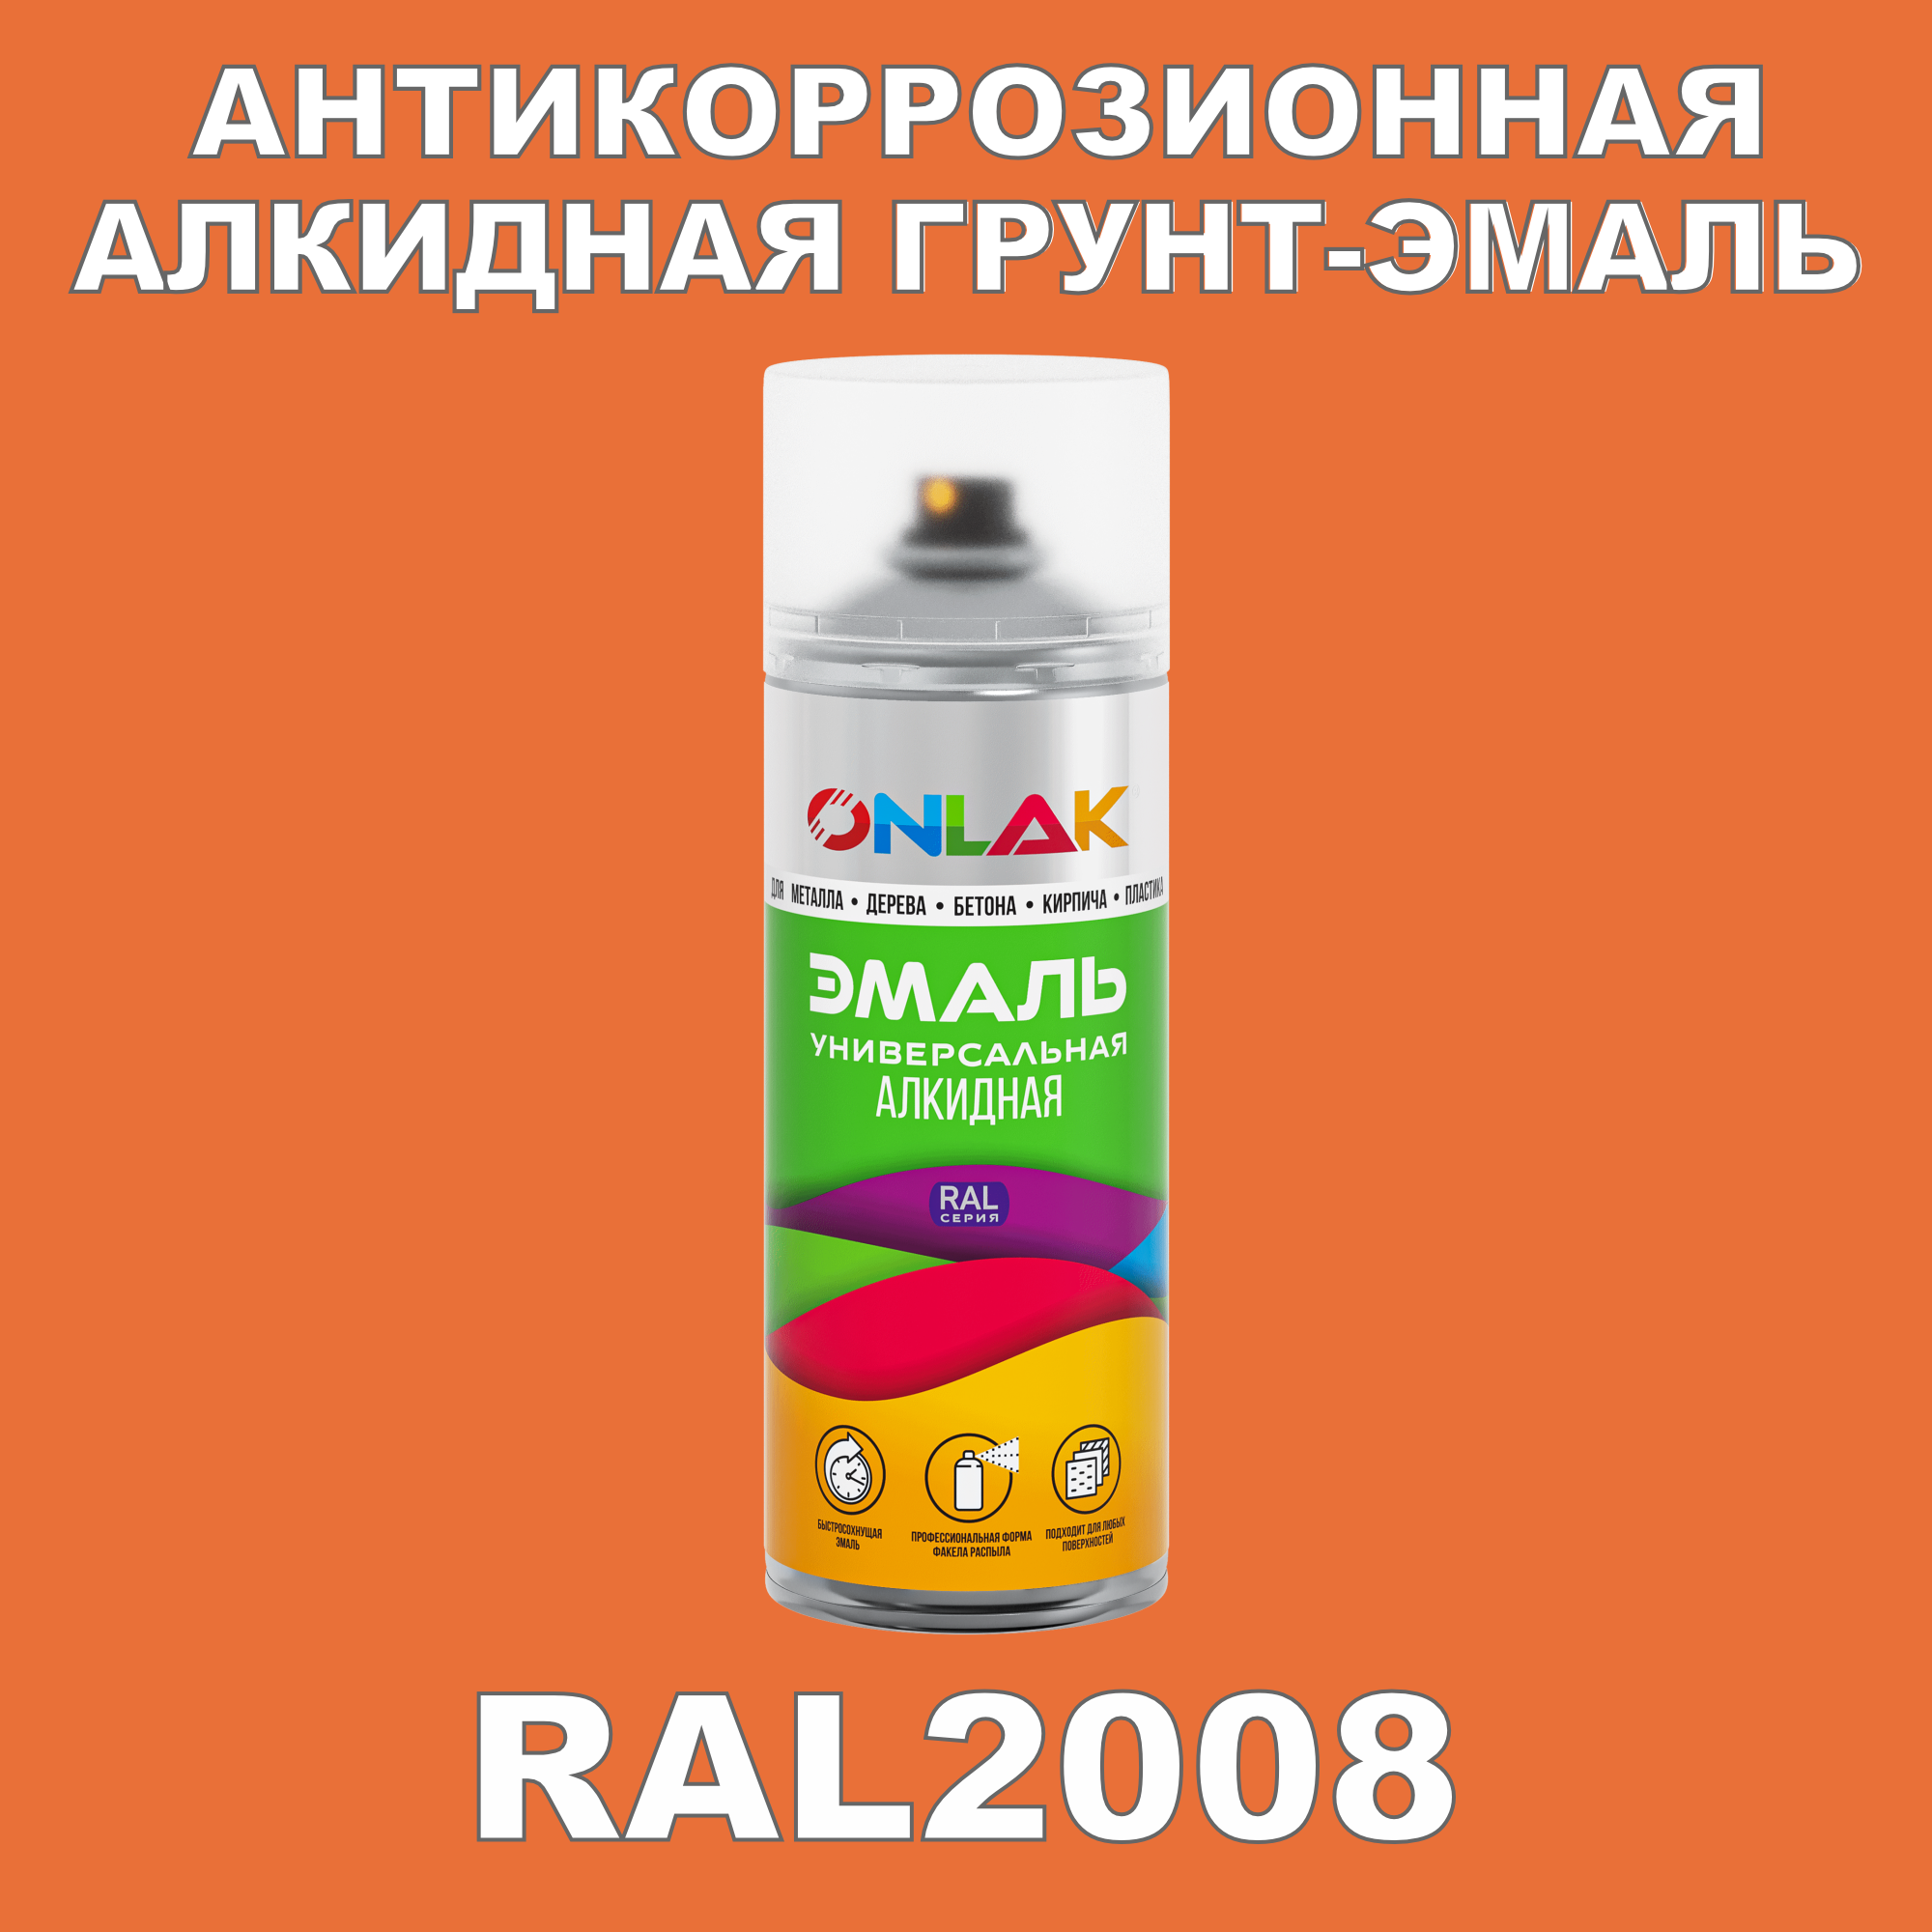 Антикоррозионная грунт-эмаль ONLAK RAL2008 полуматовая для металла и защиты от ржавчины